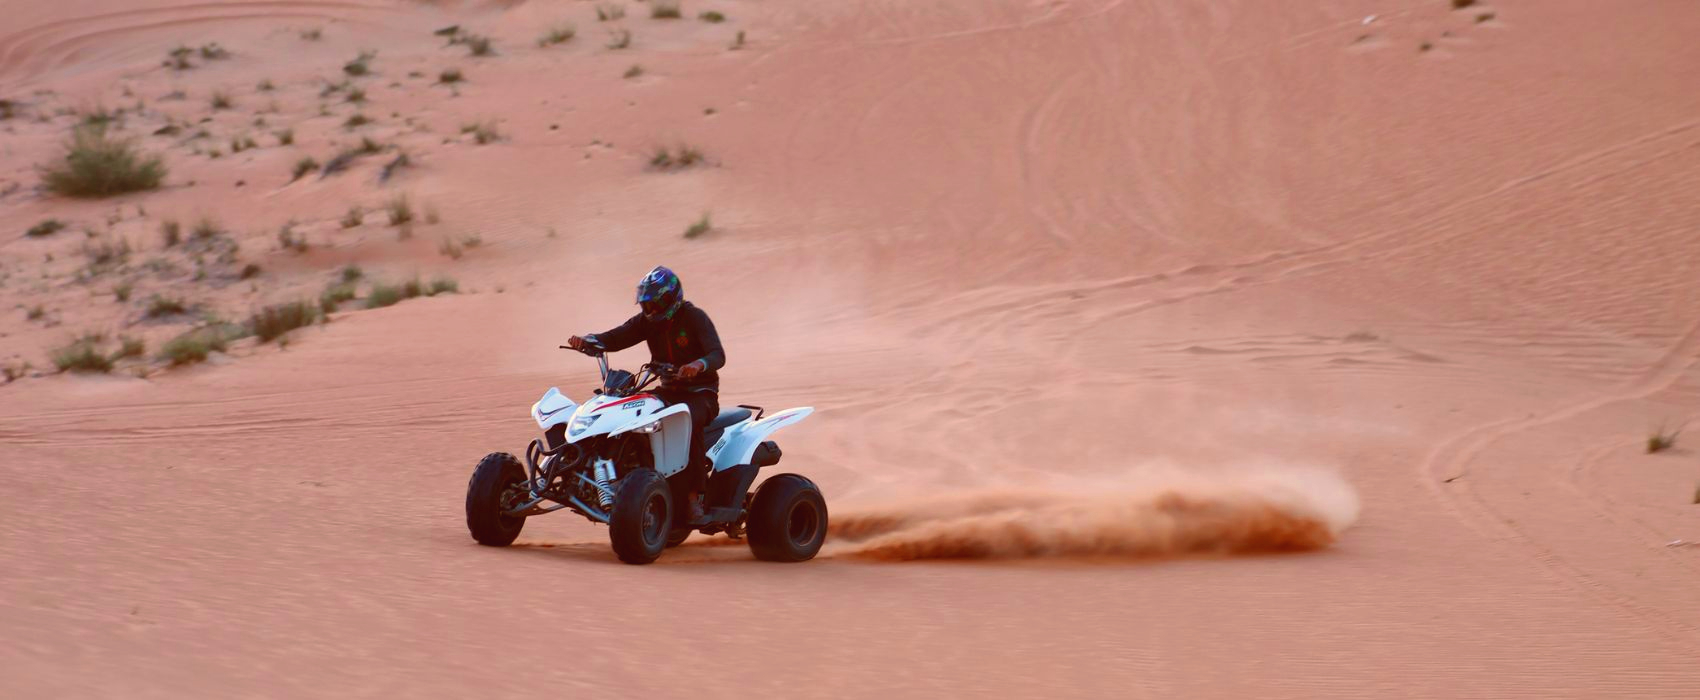 ATV ride Dubai